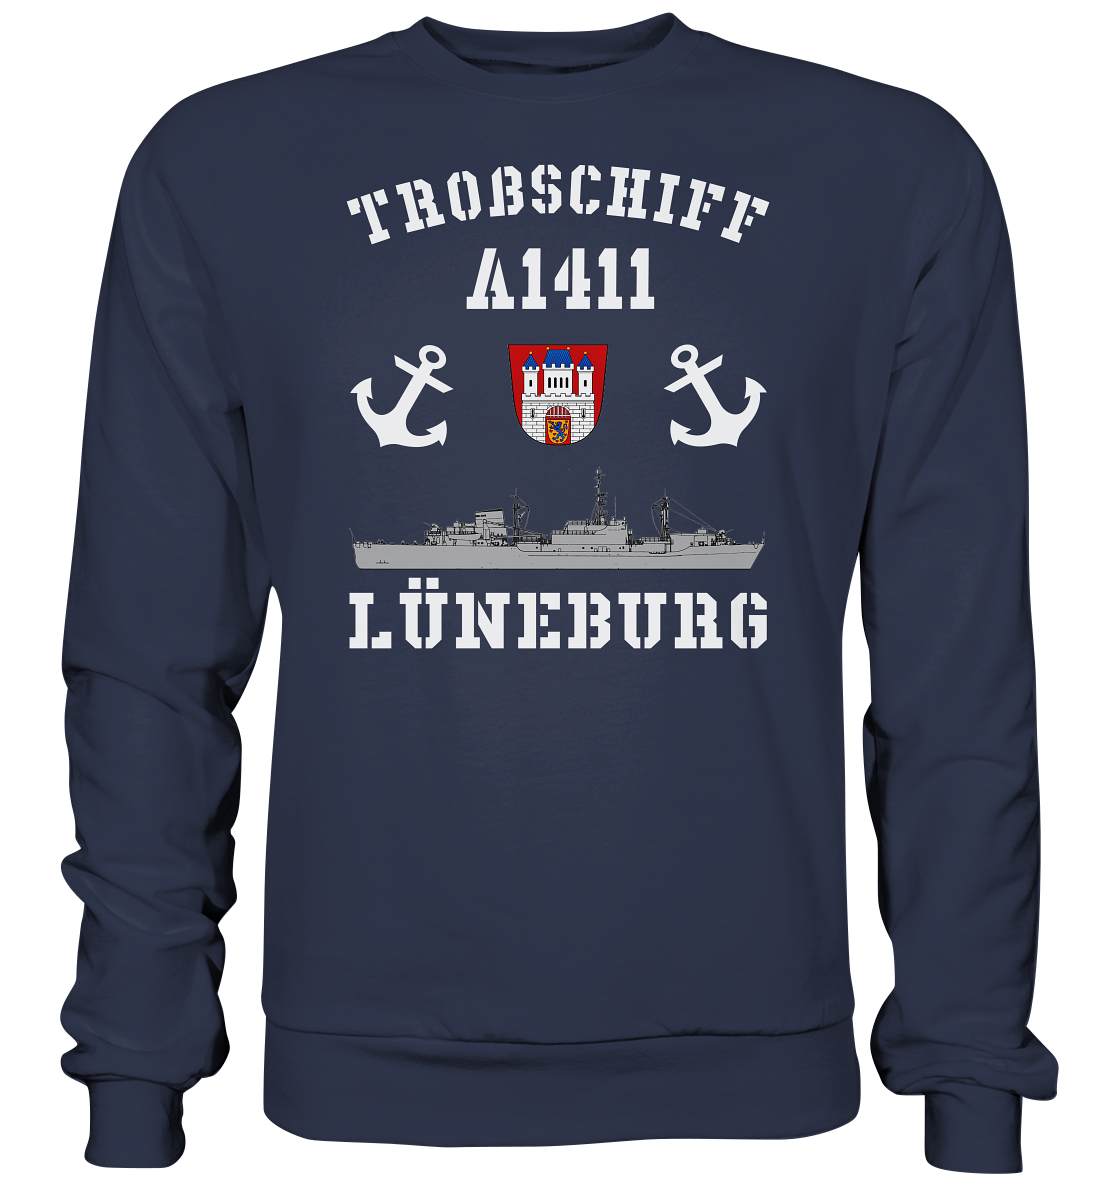 Troßschiff A1411 LÜNEBURG - Premium Sweatshirt